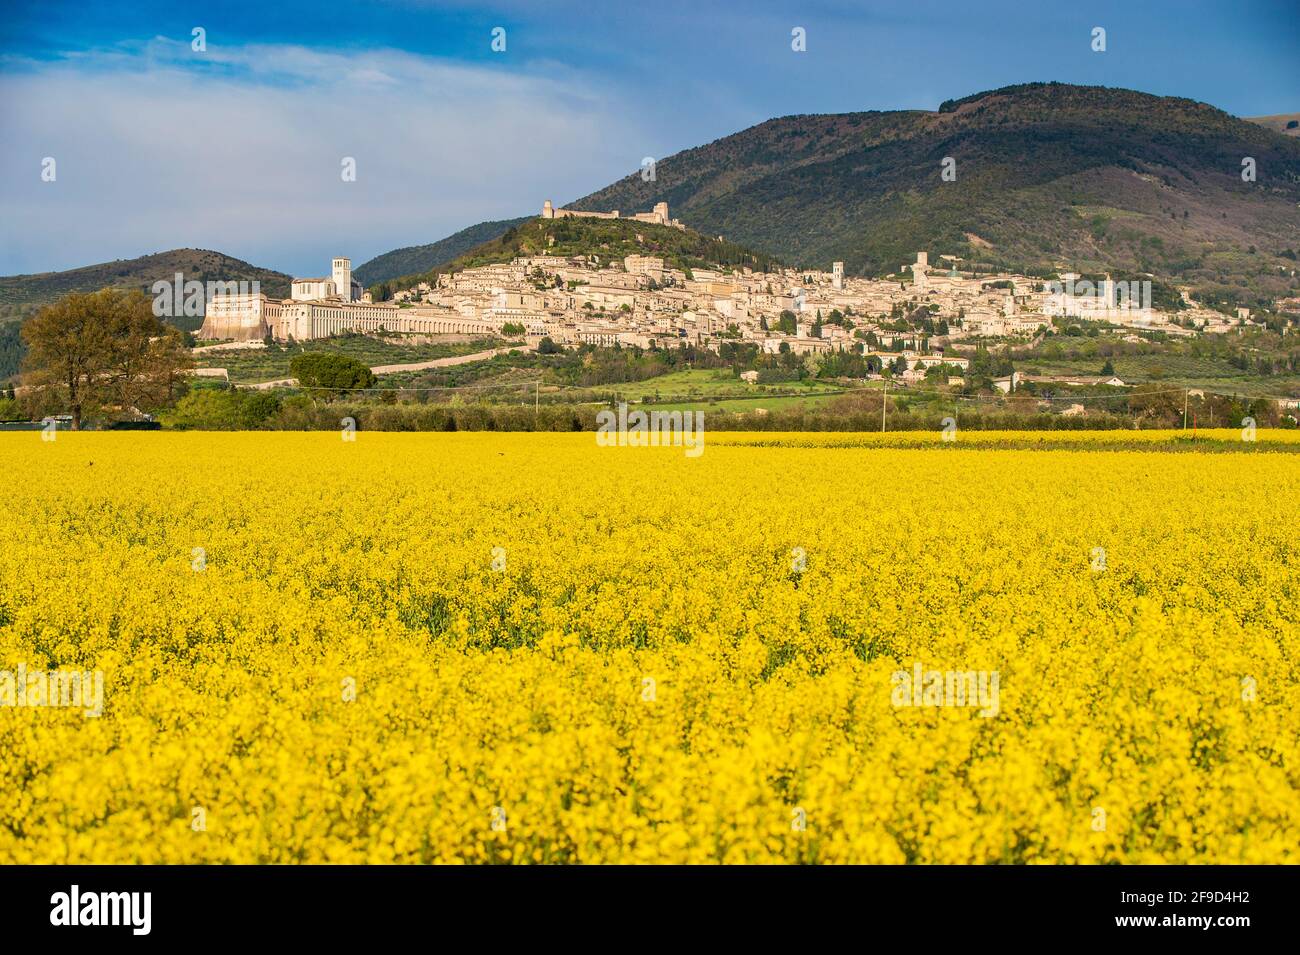 Panorama von Assisi, Perugia, Umbrien, Italien. Ein schönes und riesiges gelbes Rapsfeld mit dem schönen Panorama von Assisi im Frühling Stockfoto